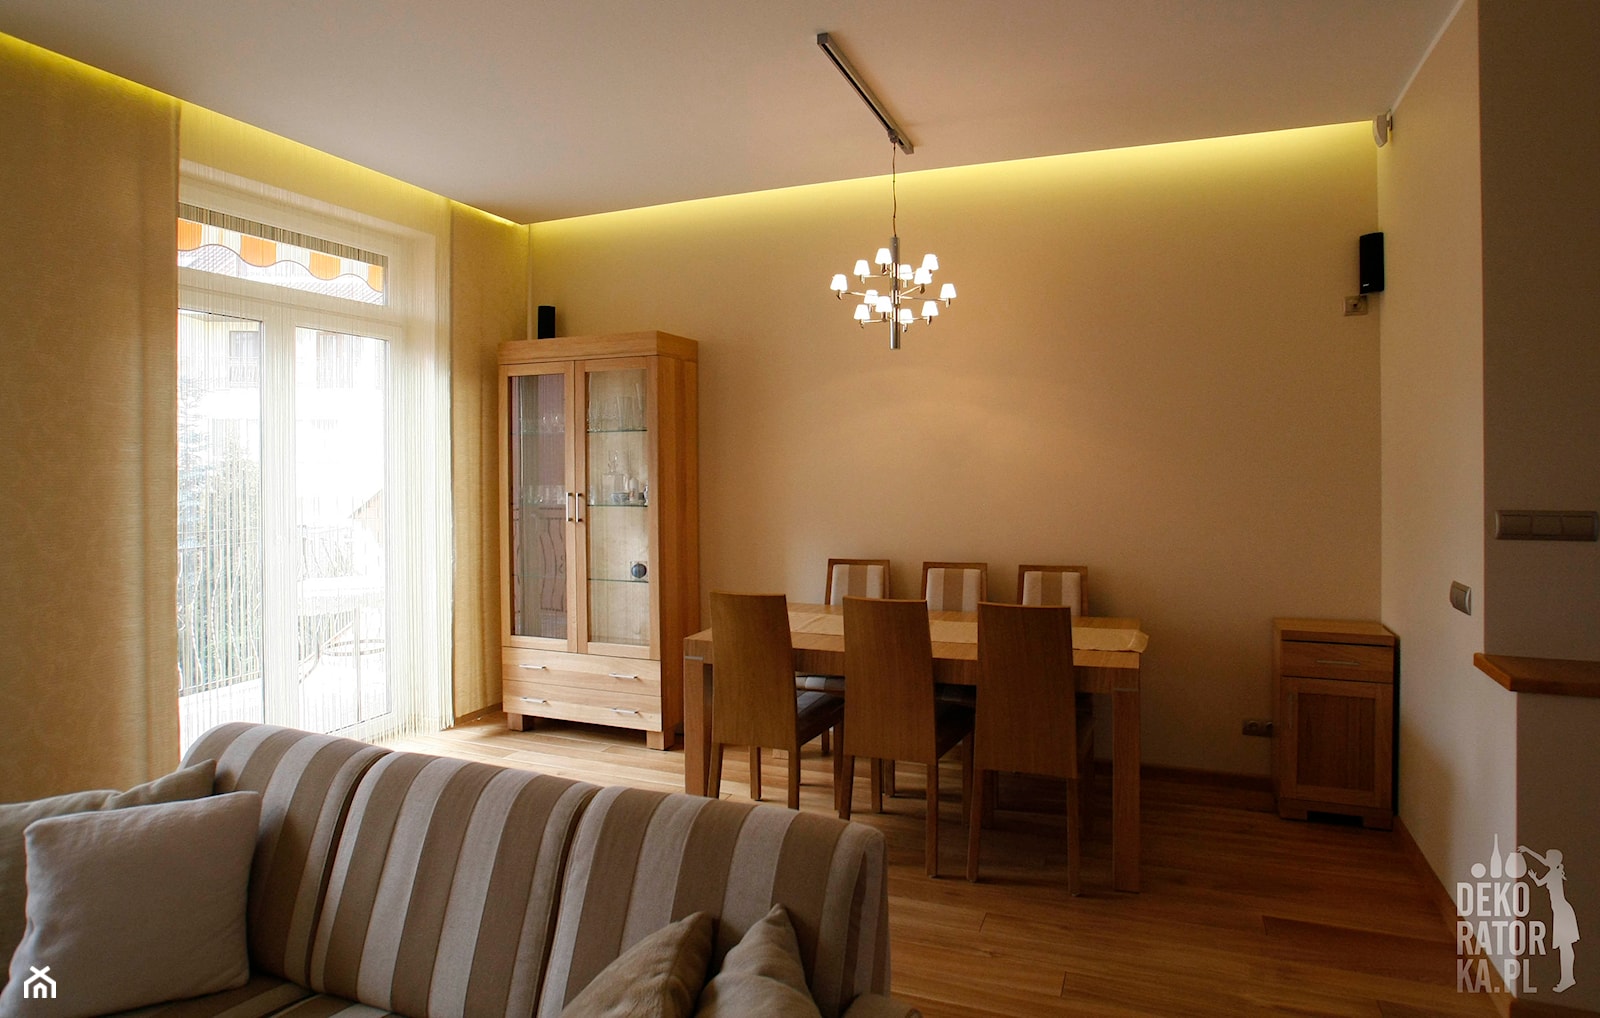 POZNAŃ|Strzeszyn|salon i kuchnia | realizacja - Średnia szara jadalnia w salonie - zdjęcie od dekoratorka.pl - Homebook